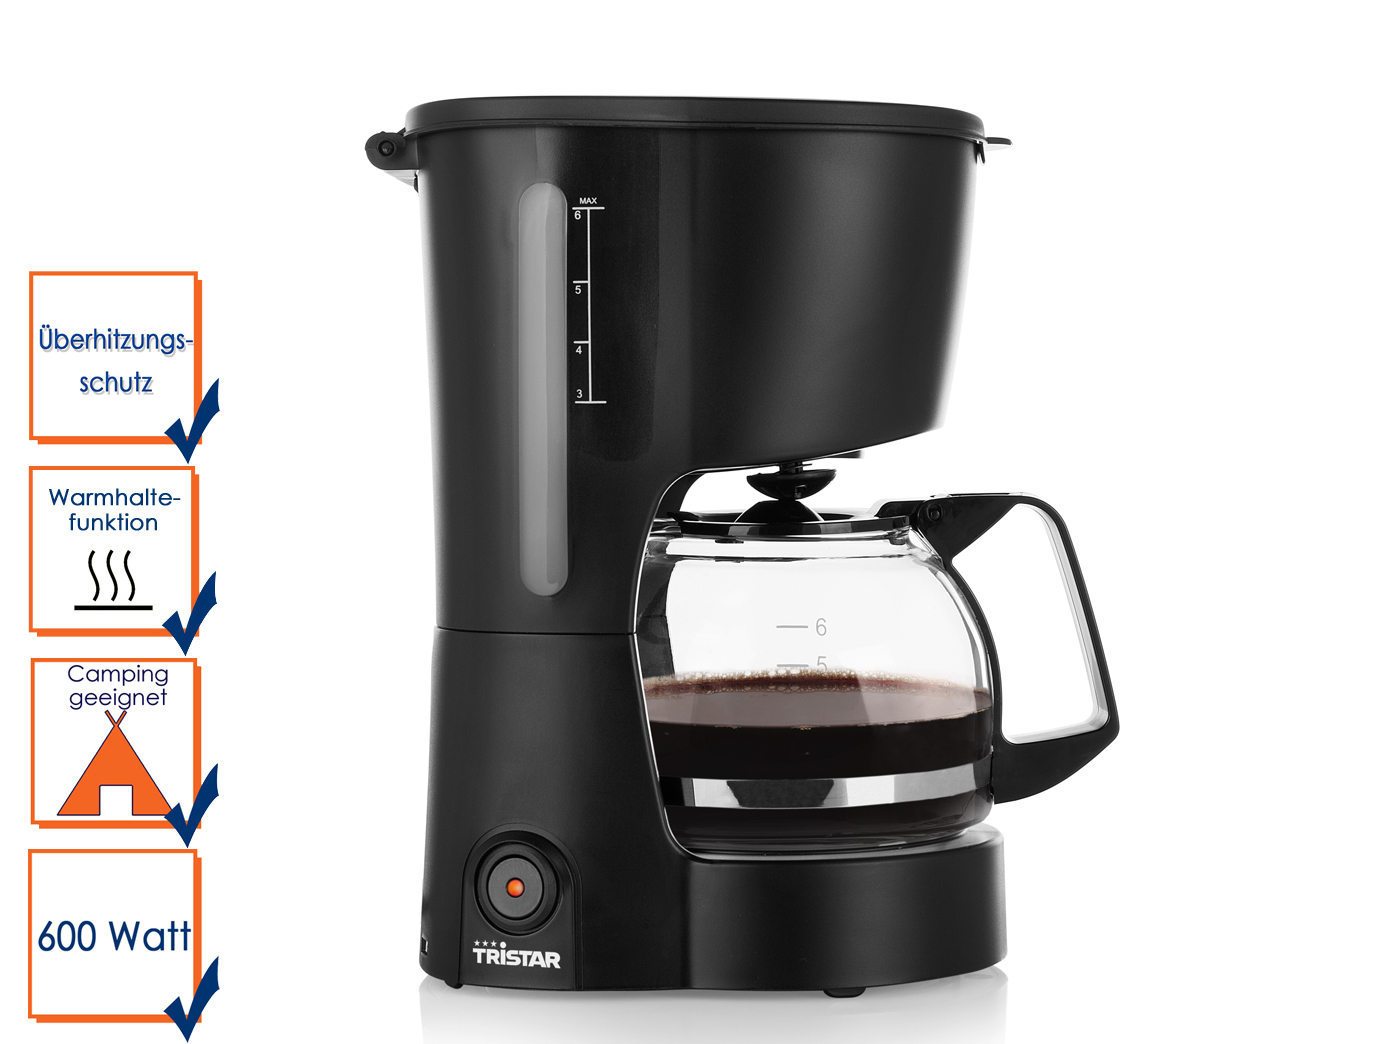 Kompakte Kaffeemaschine geeignet für 6 Tassen und einer Leistung von 600 Watt